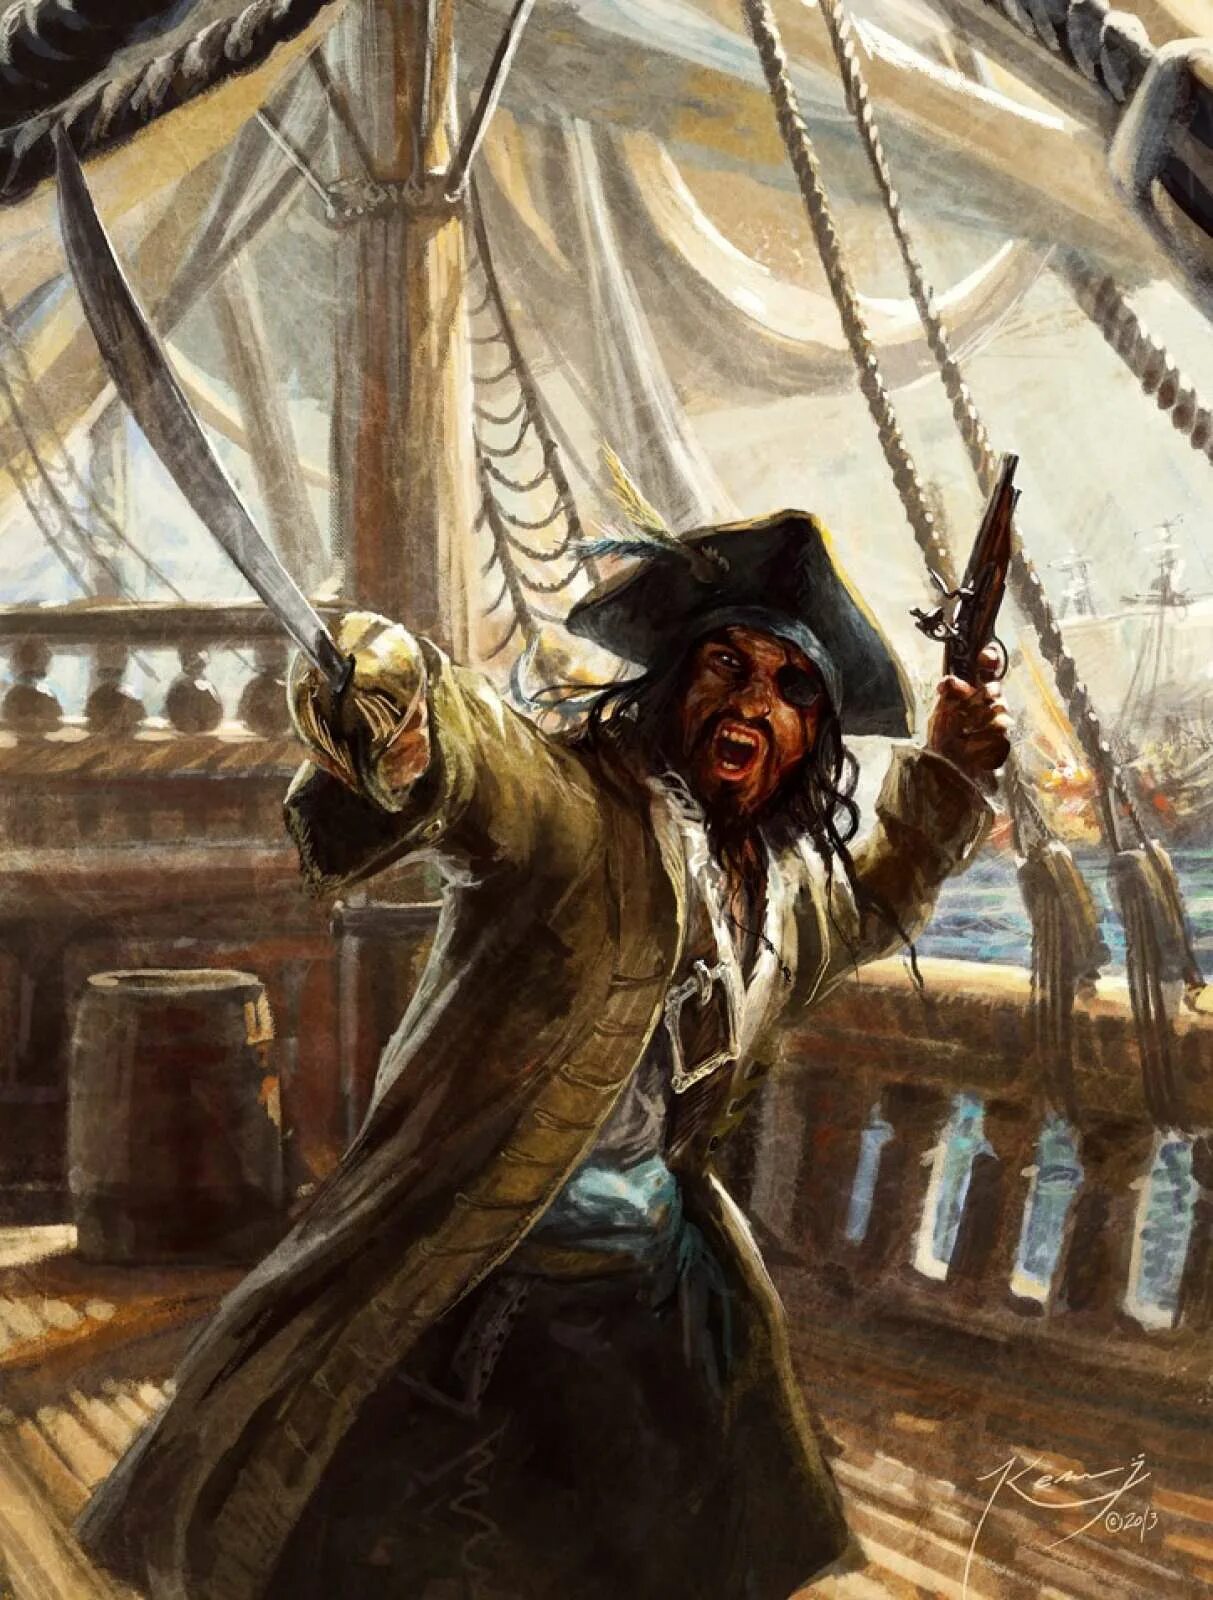 Нападение пиратов. Даниэль Монбар пират. Уильям Кидд корабль. Флибустьеры пираты Корсары. Флибустьеры 17 века.